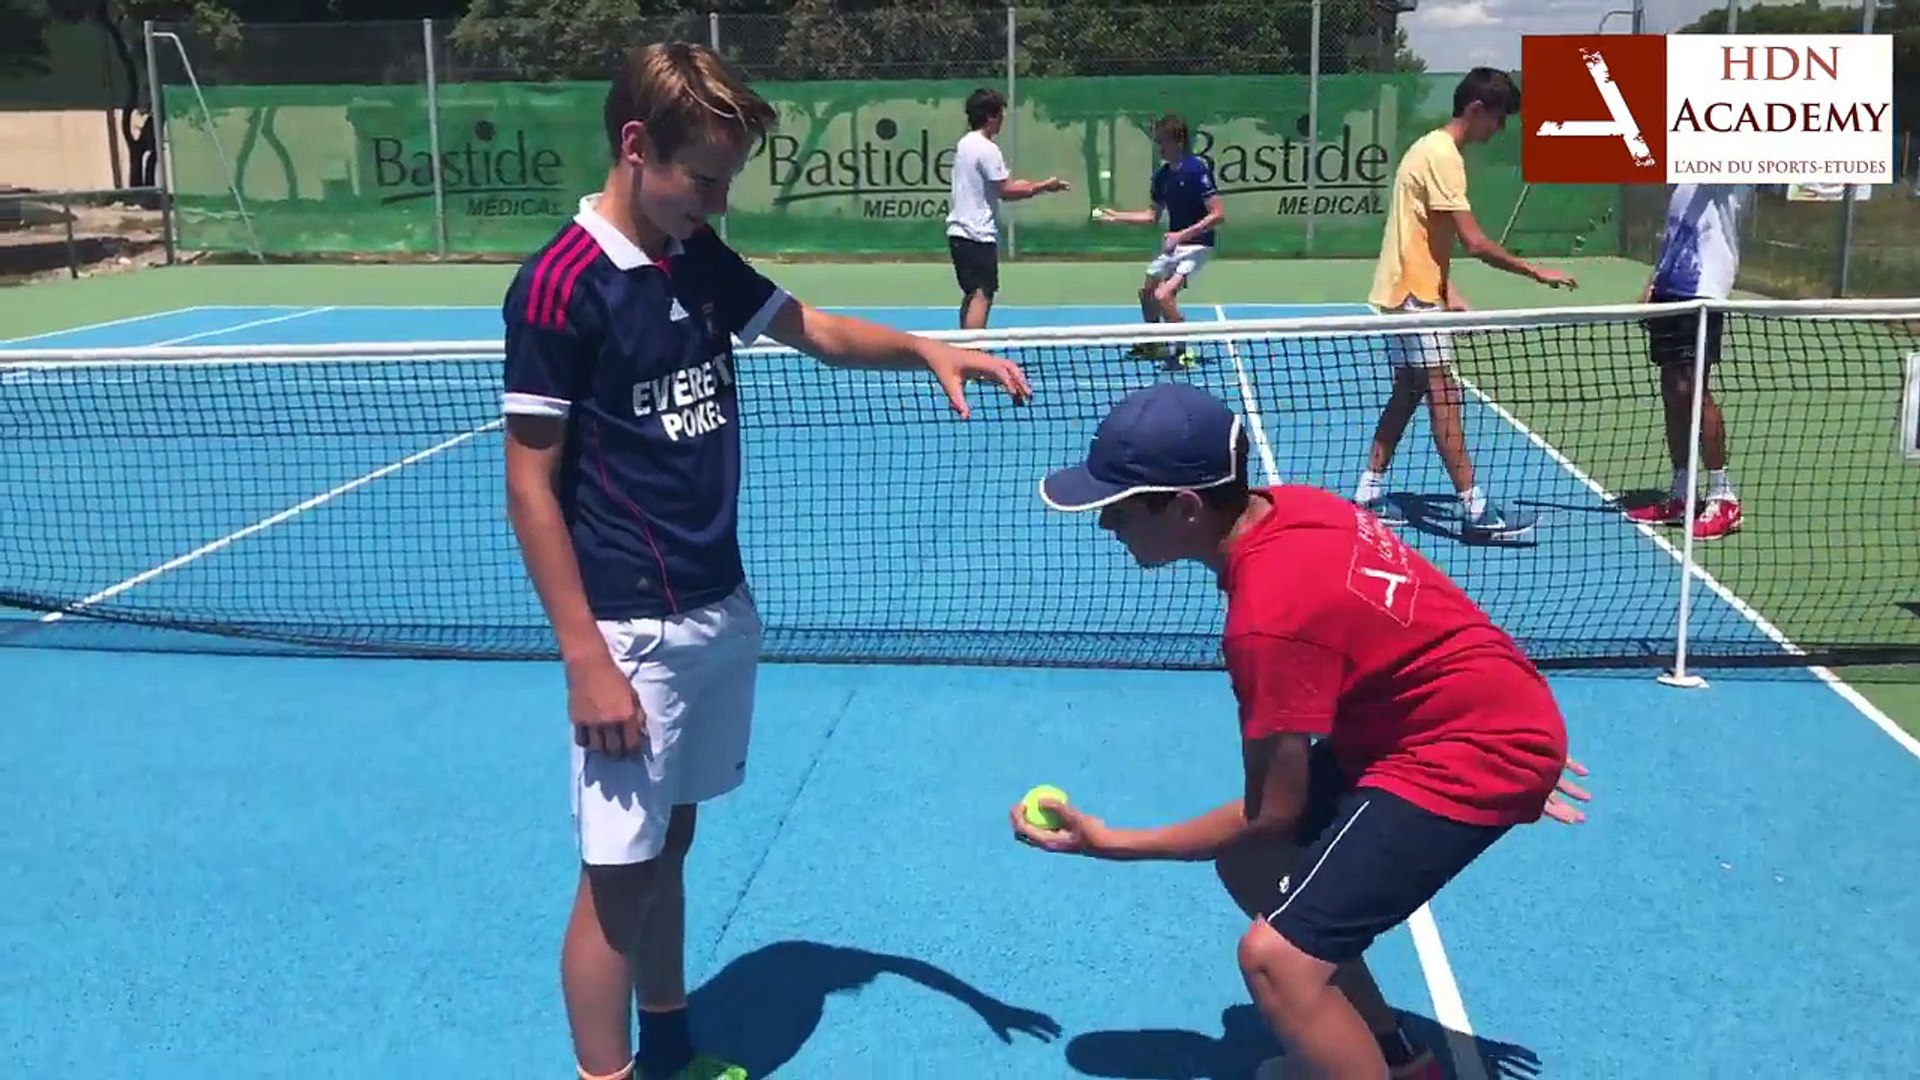 HDN Academy - Votre stage tennis à l'Académie des Hauts de Nîmes dès cet  été 2017 ! - Vidéo Dailymotion